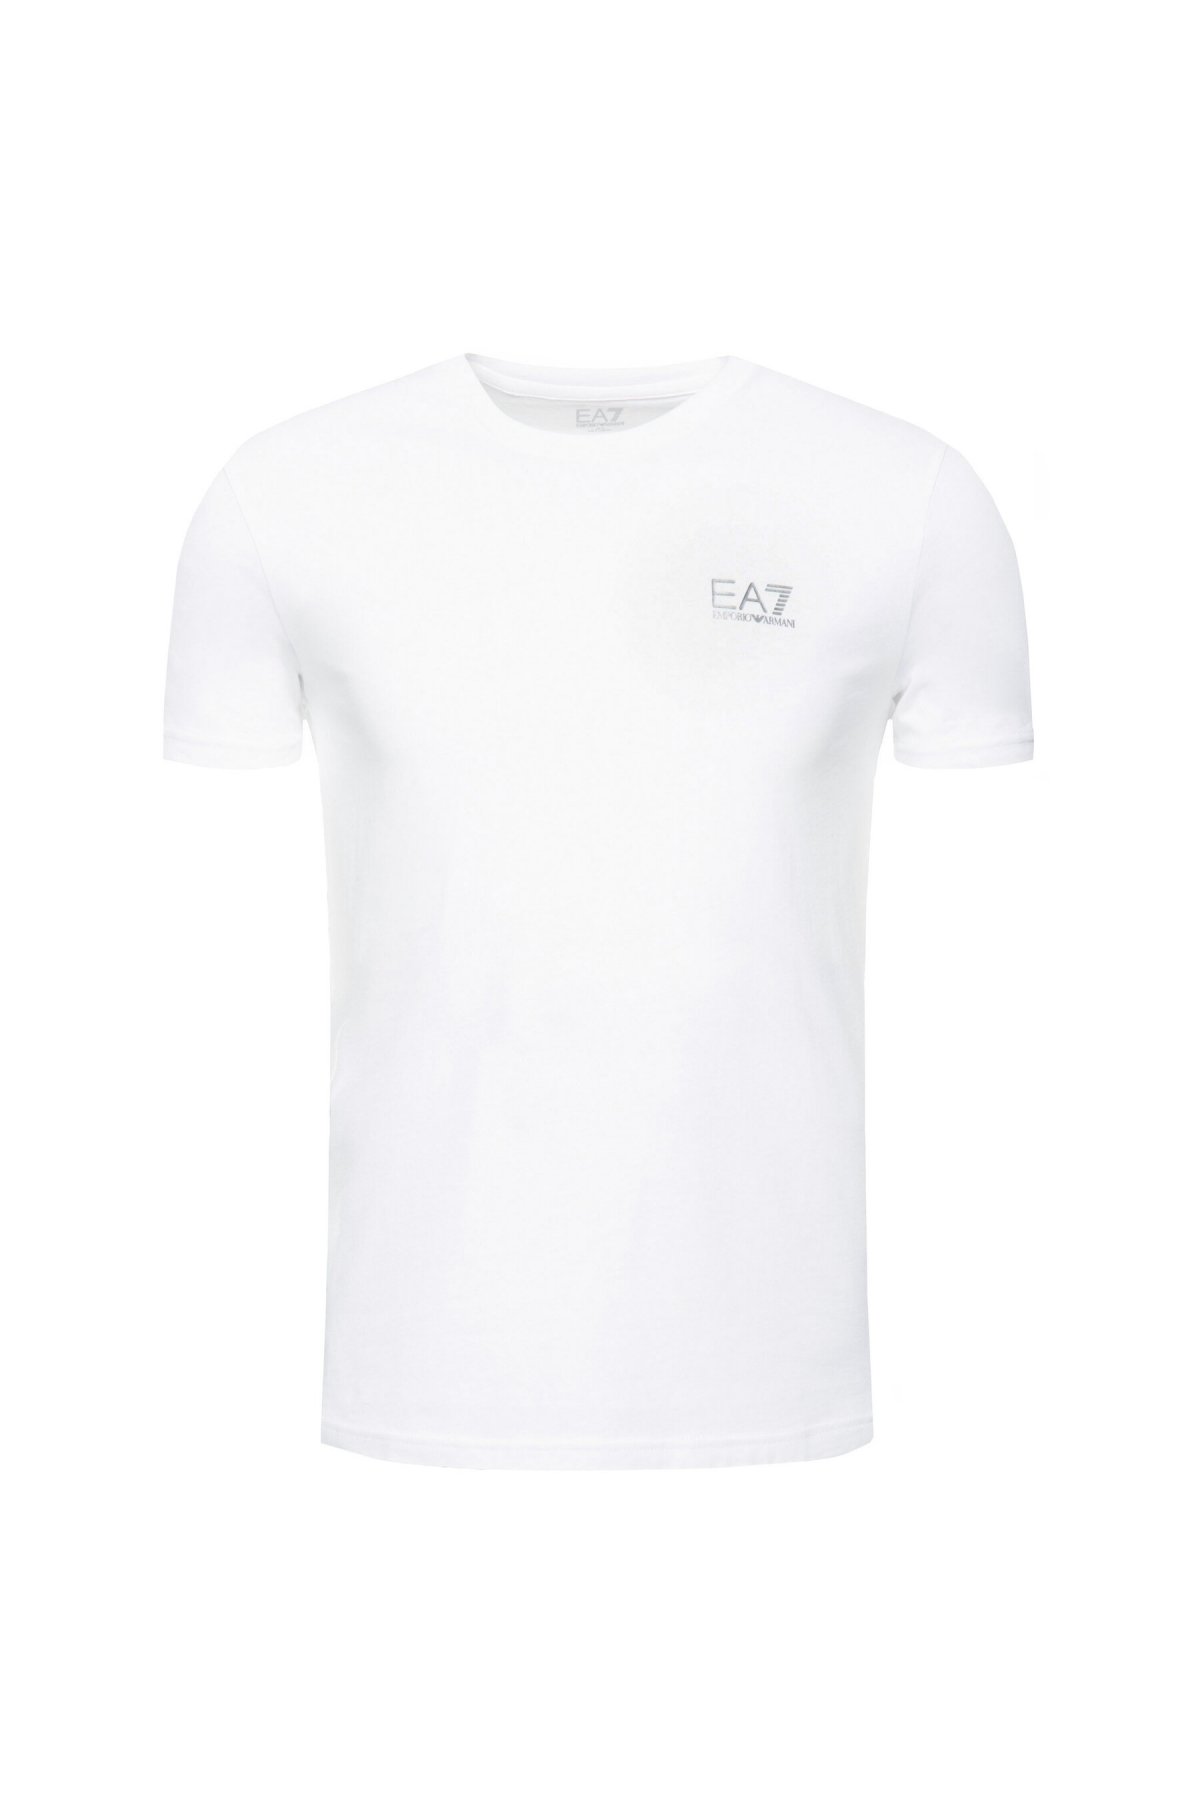 Emporio Armani 8NPT51 PJM9Z tričko bílé